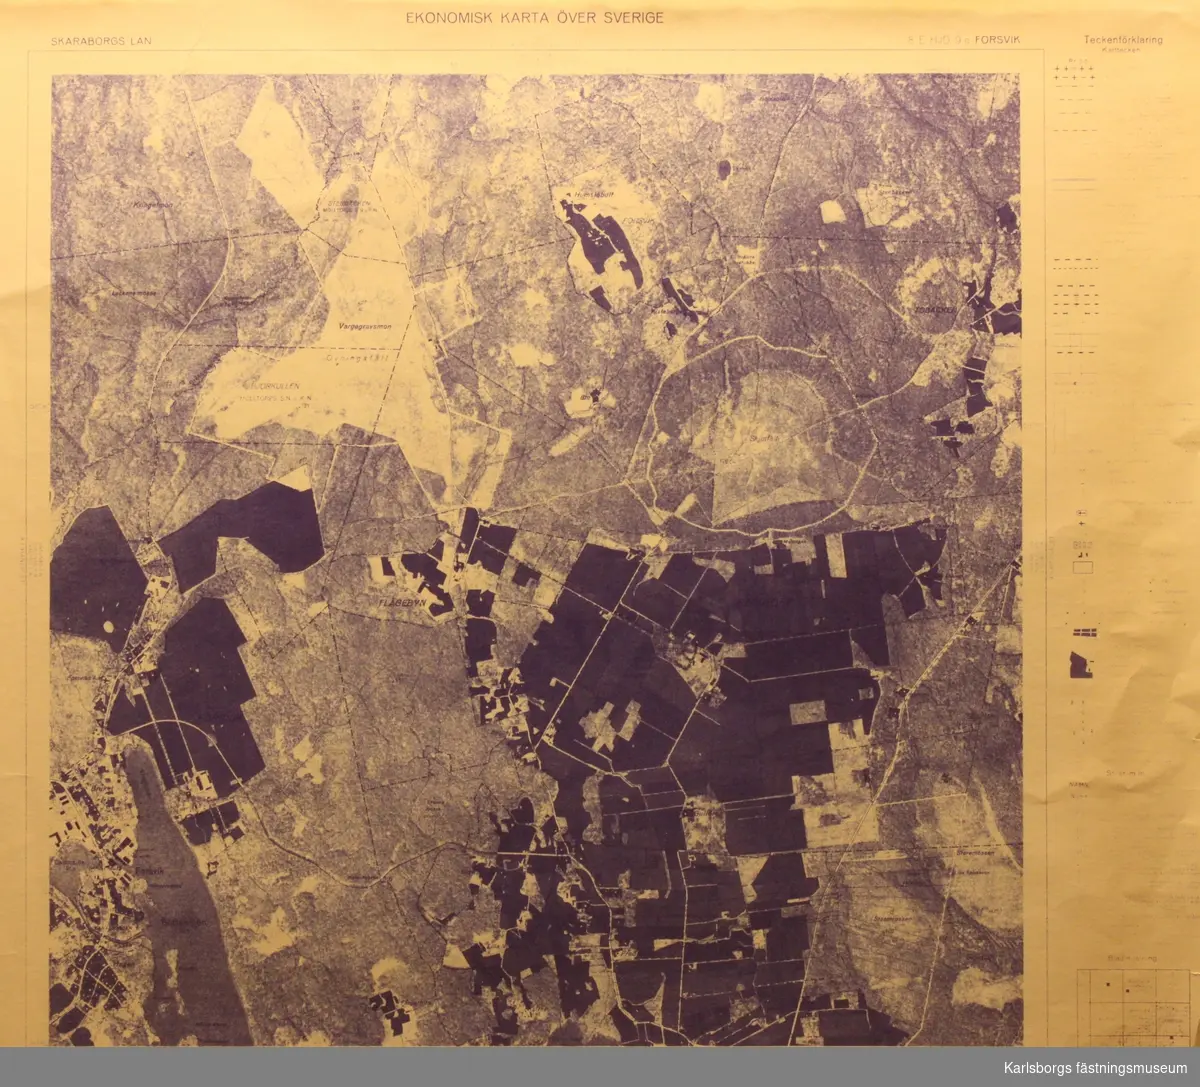 Ekonimisk karta över Sverige. Flygfotografering verkställd 1957. Kartläggning slutförd 1959.